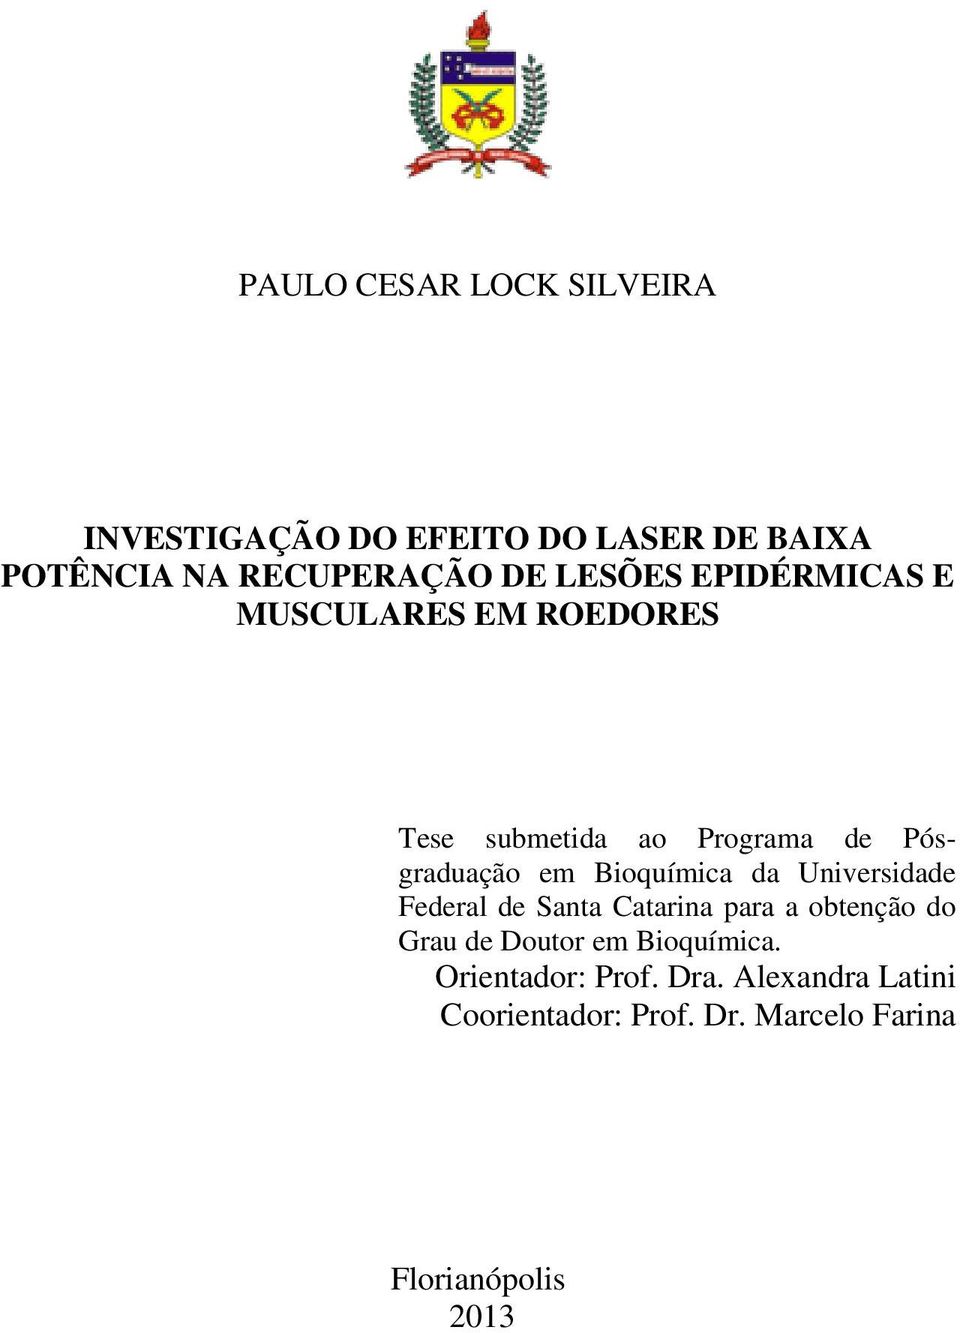 Bioquímica da Universidade Federal de Santa Catarina para a obtenção do Grau de Doutor em